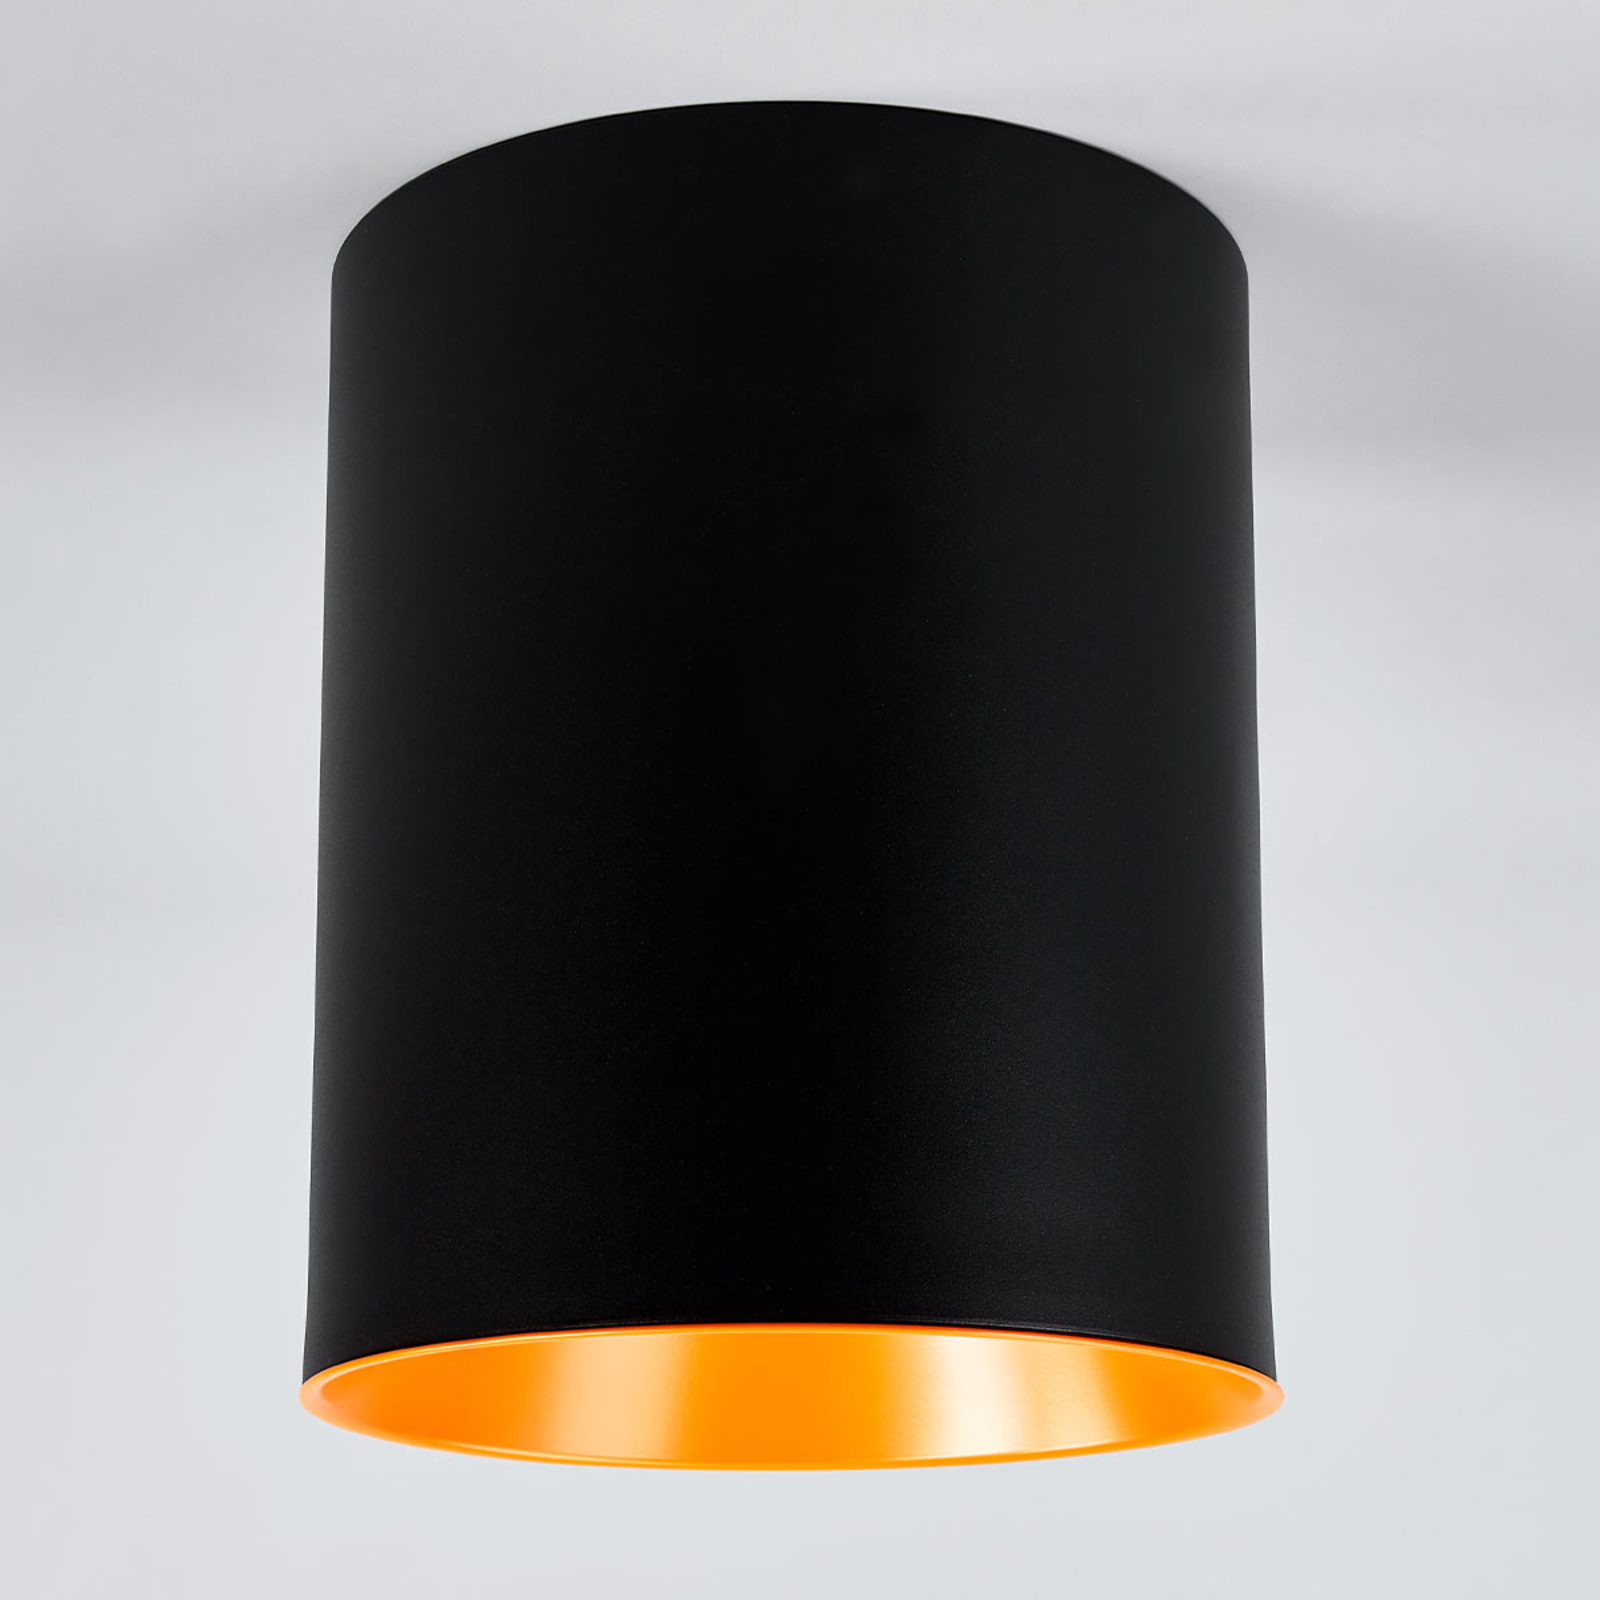 Tagora designer LED ceiling light, cylinder